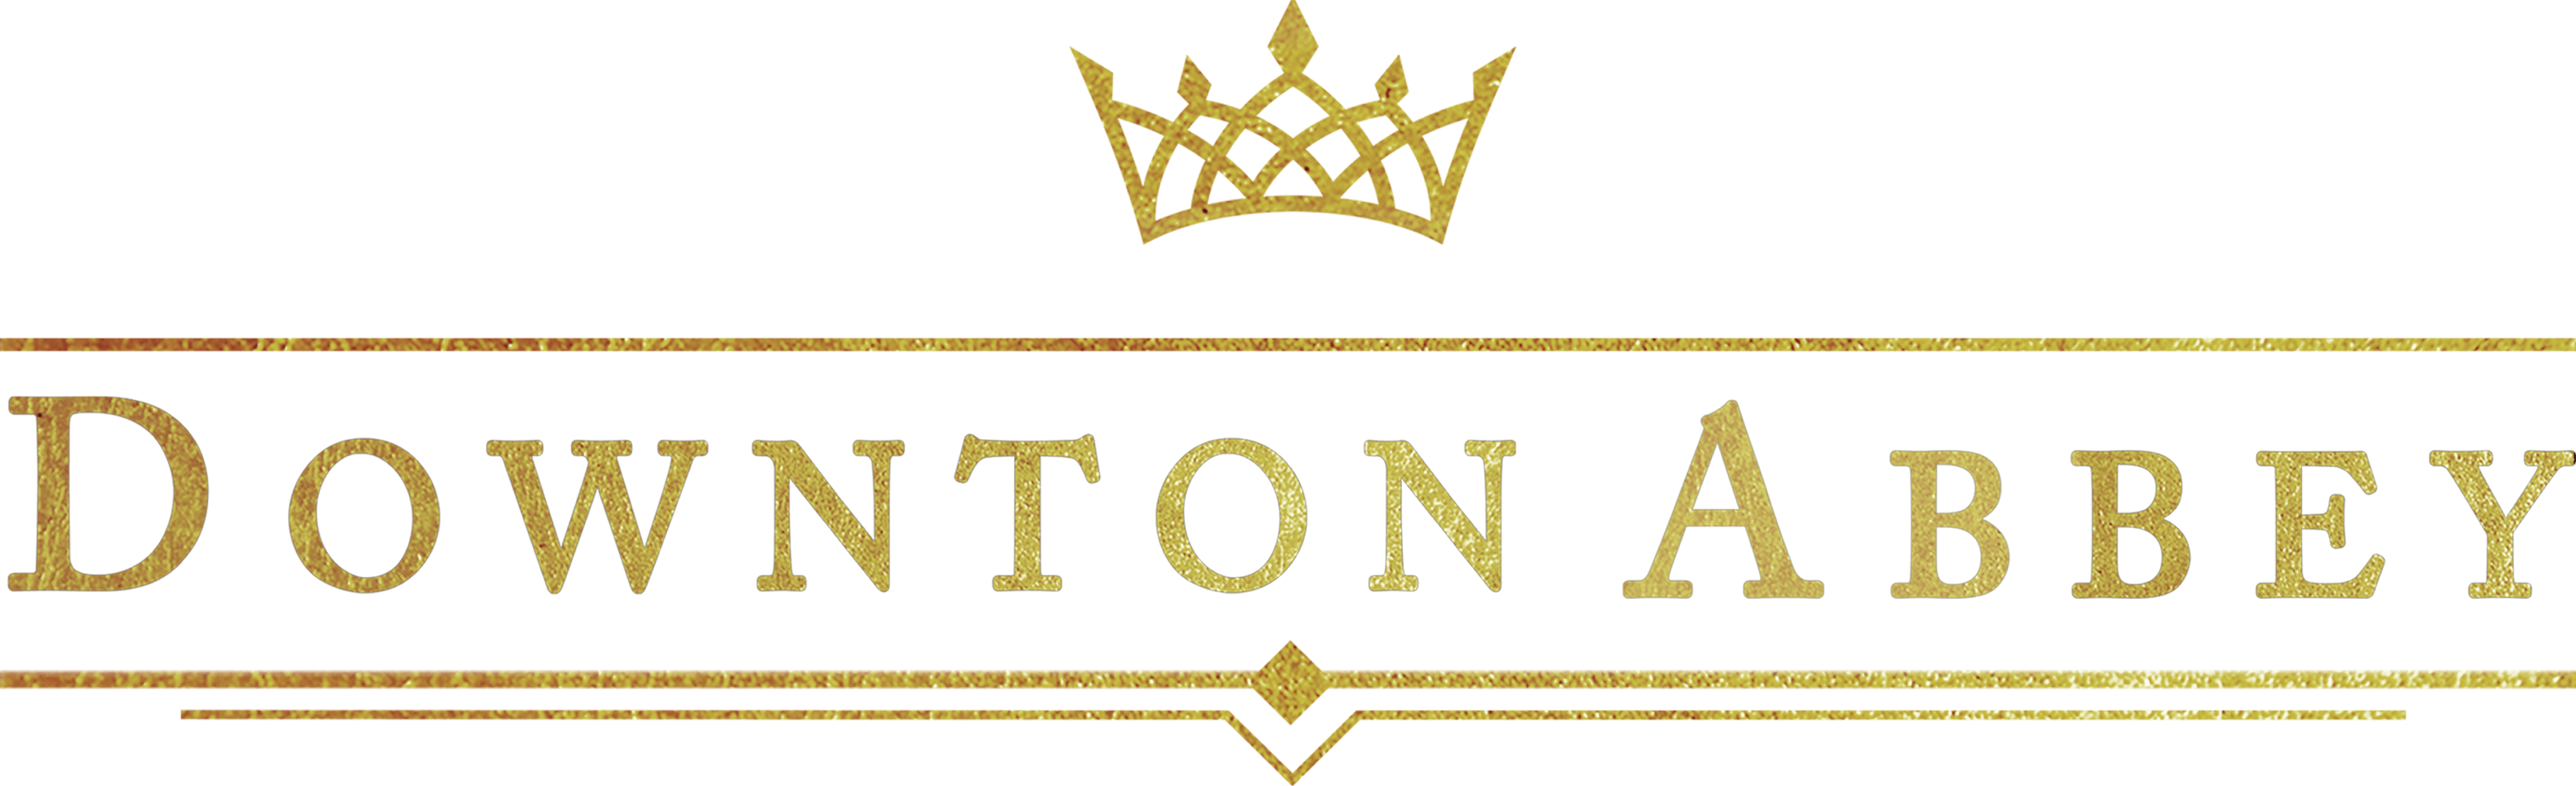 Downton Abbey logo